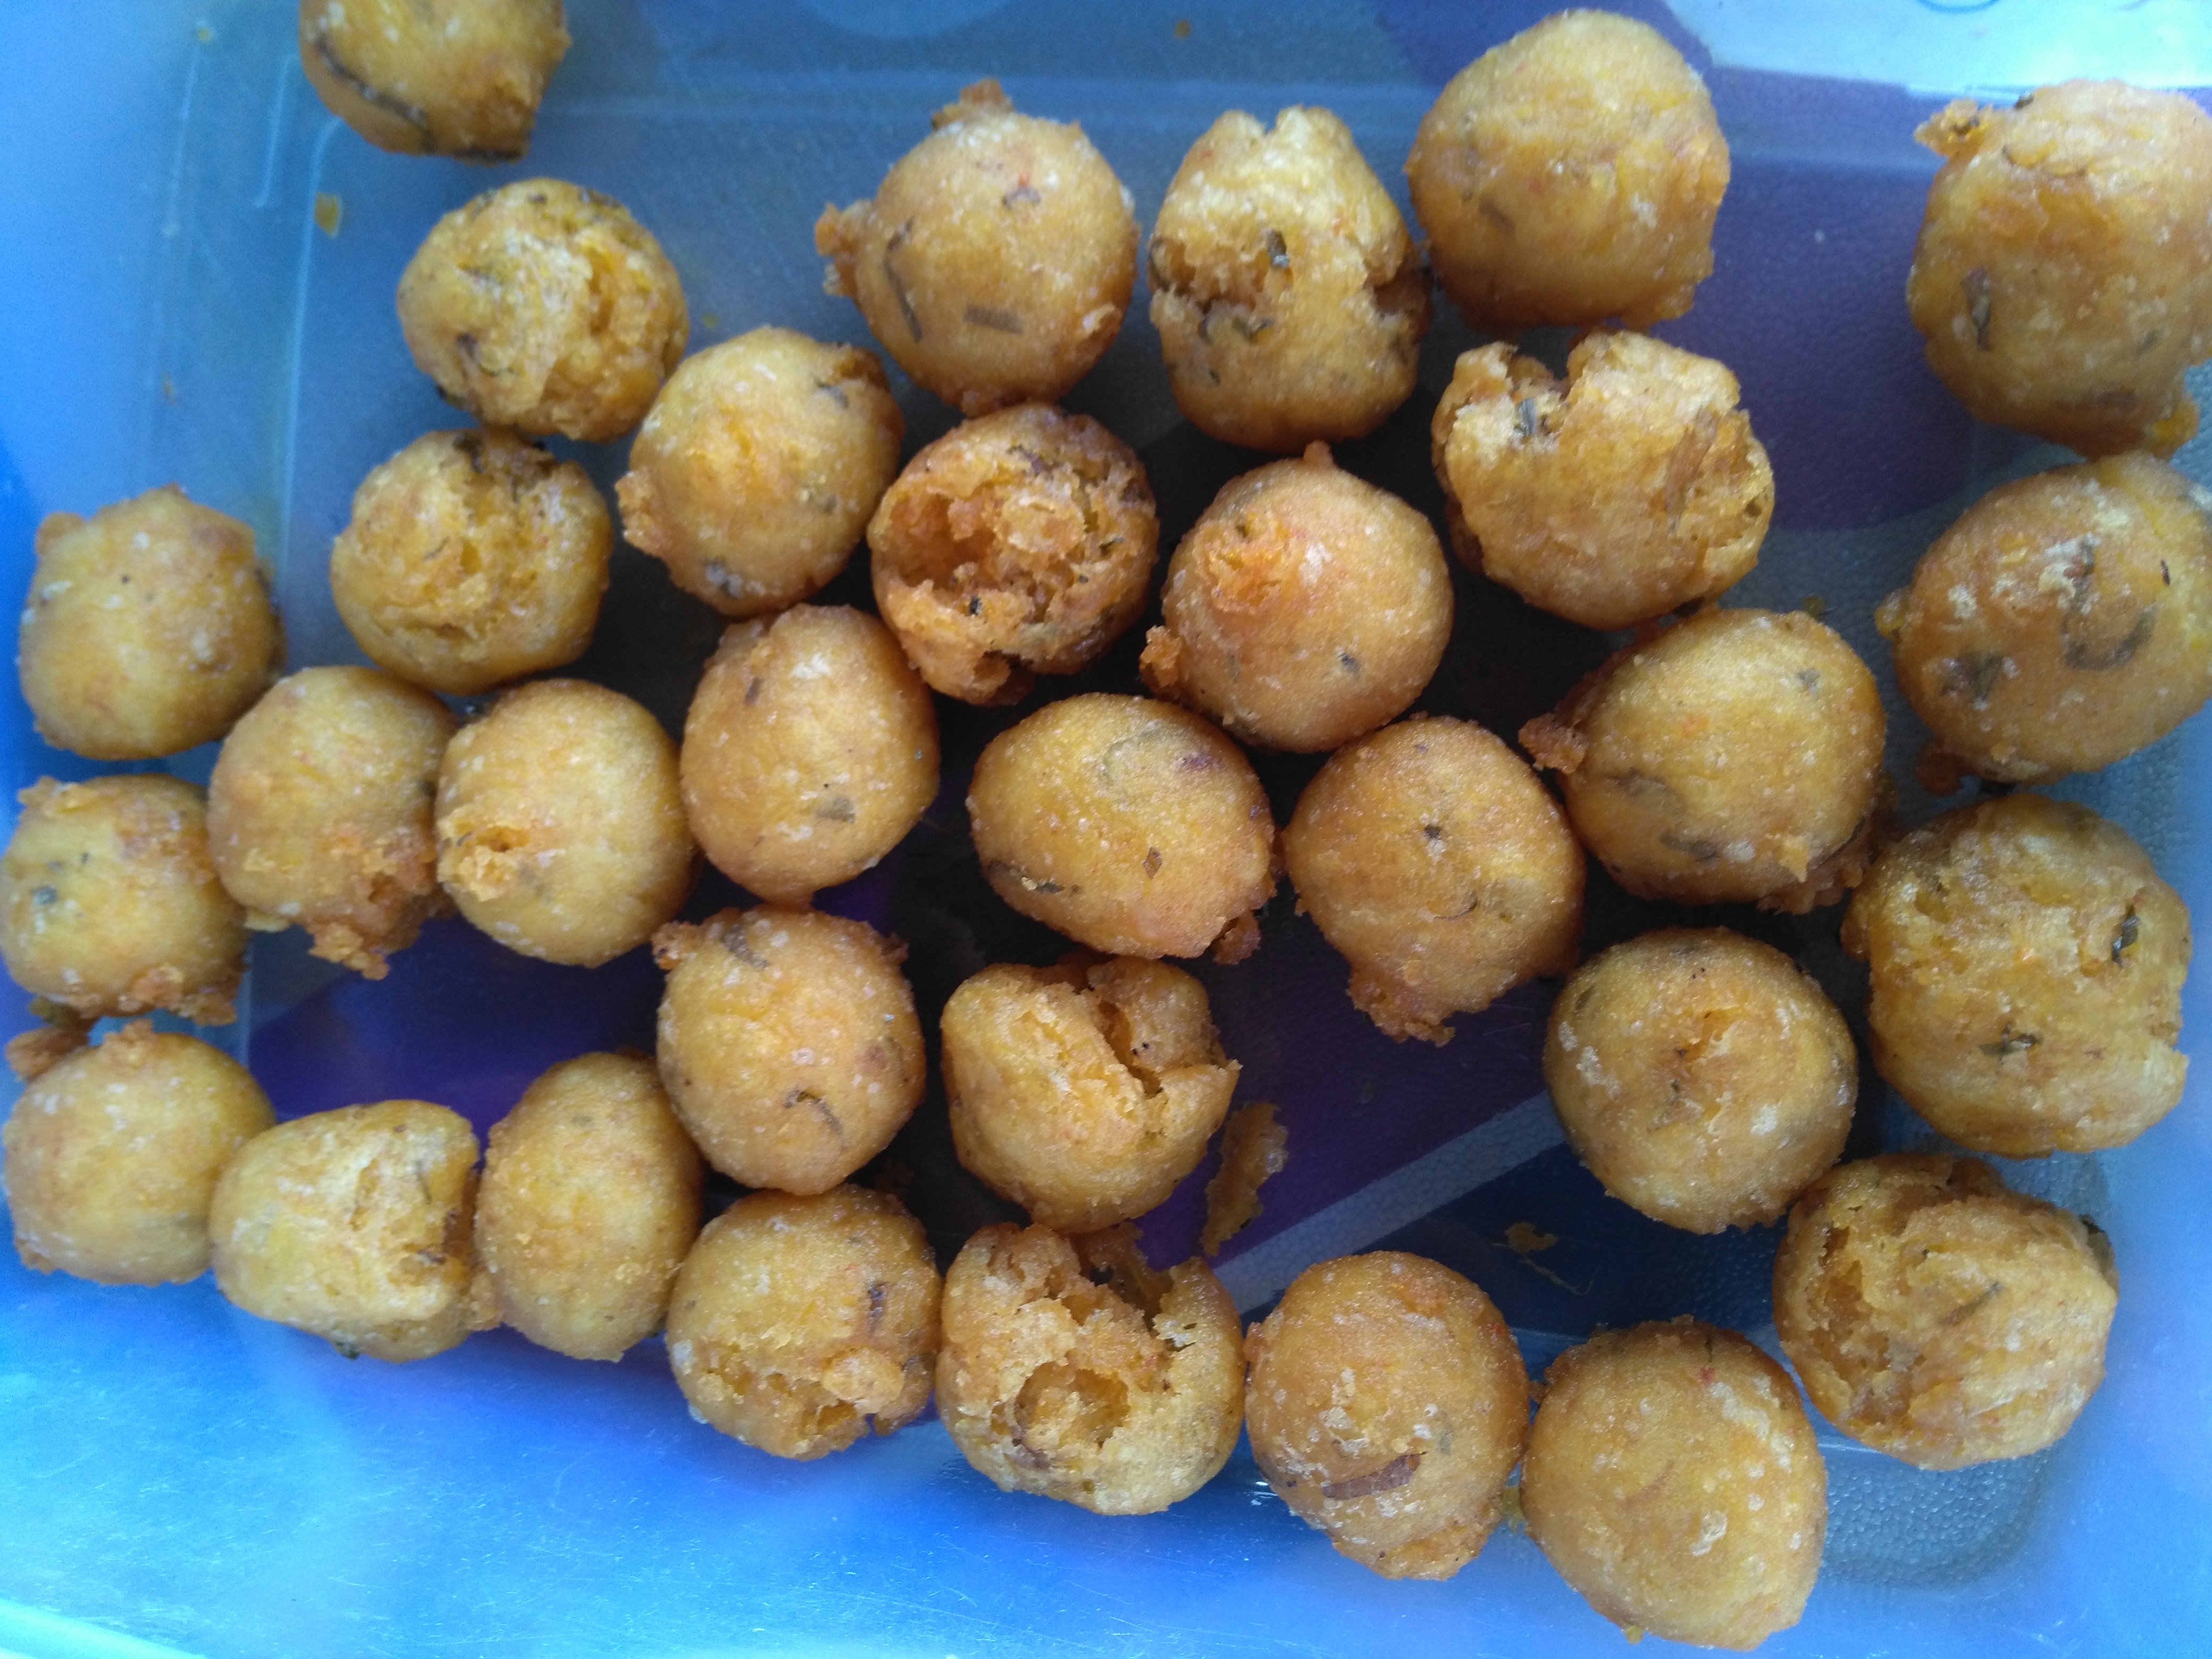 Salah: deep fried balls of dough and potato.